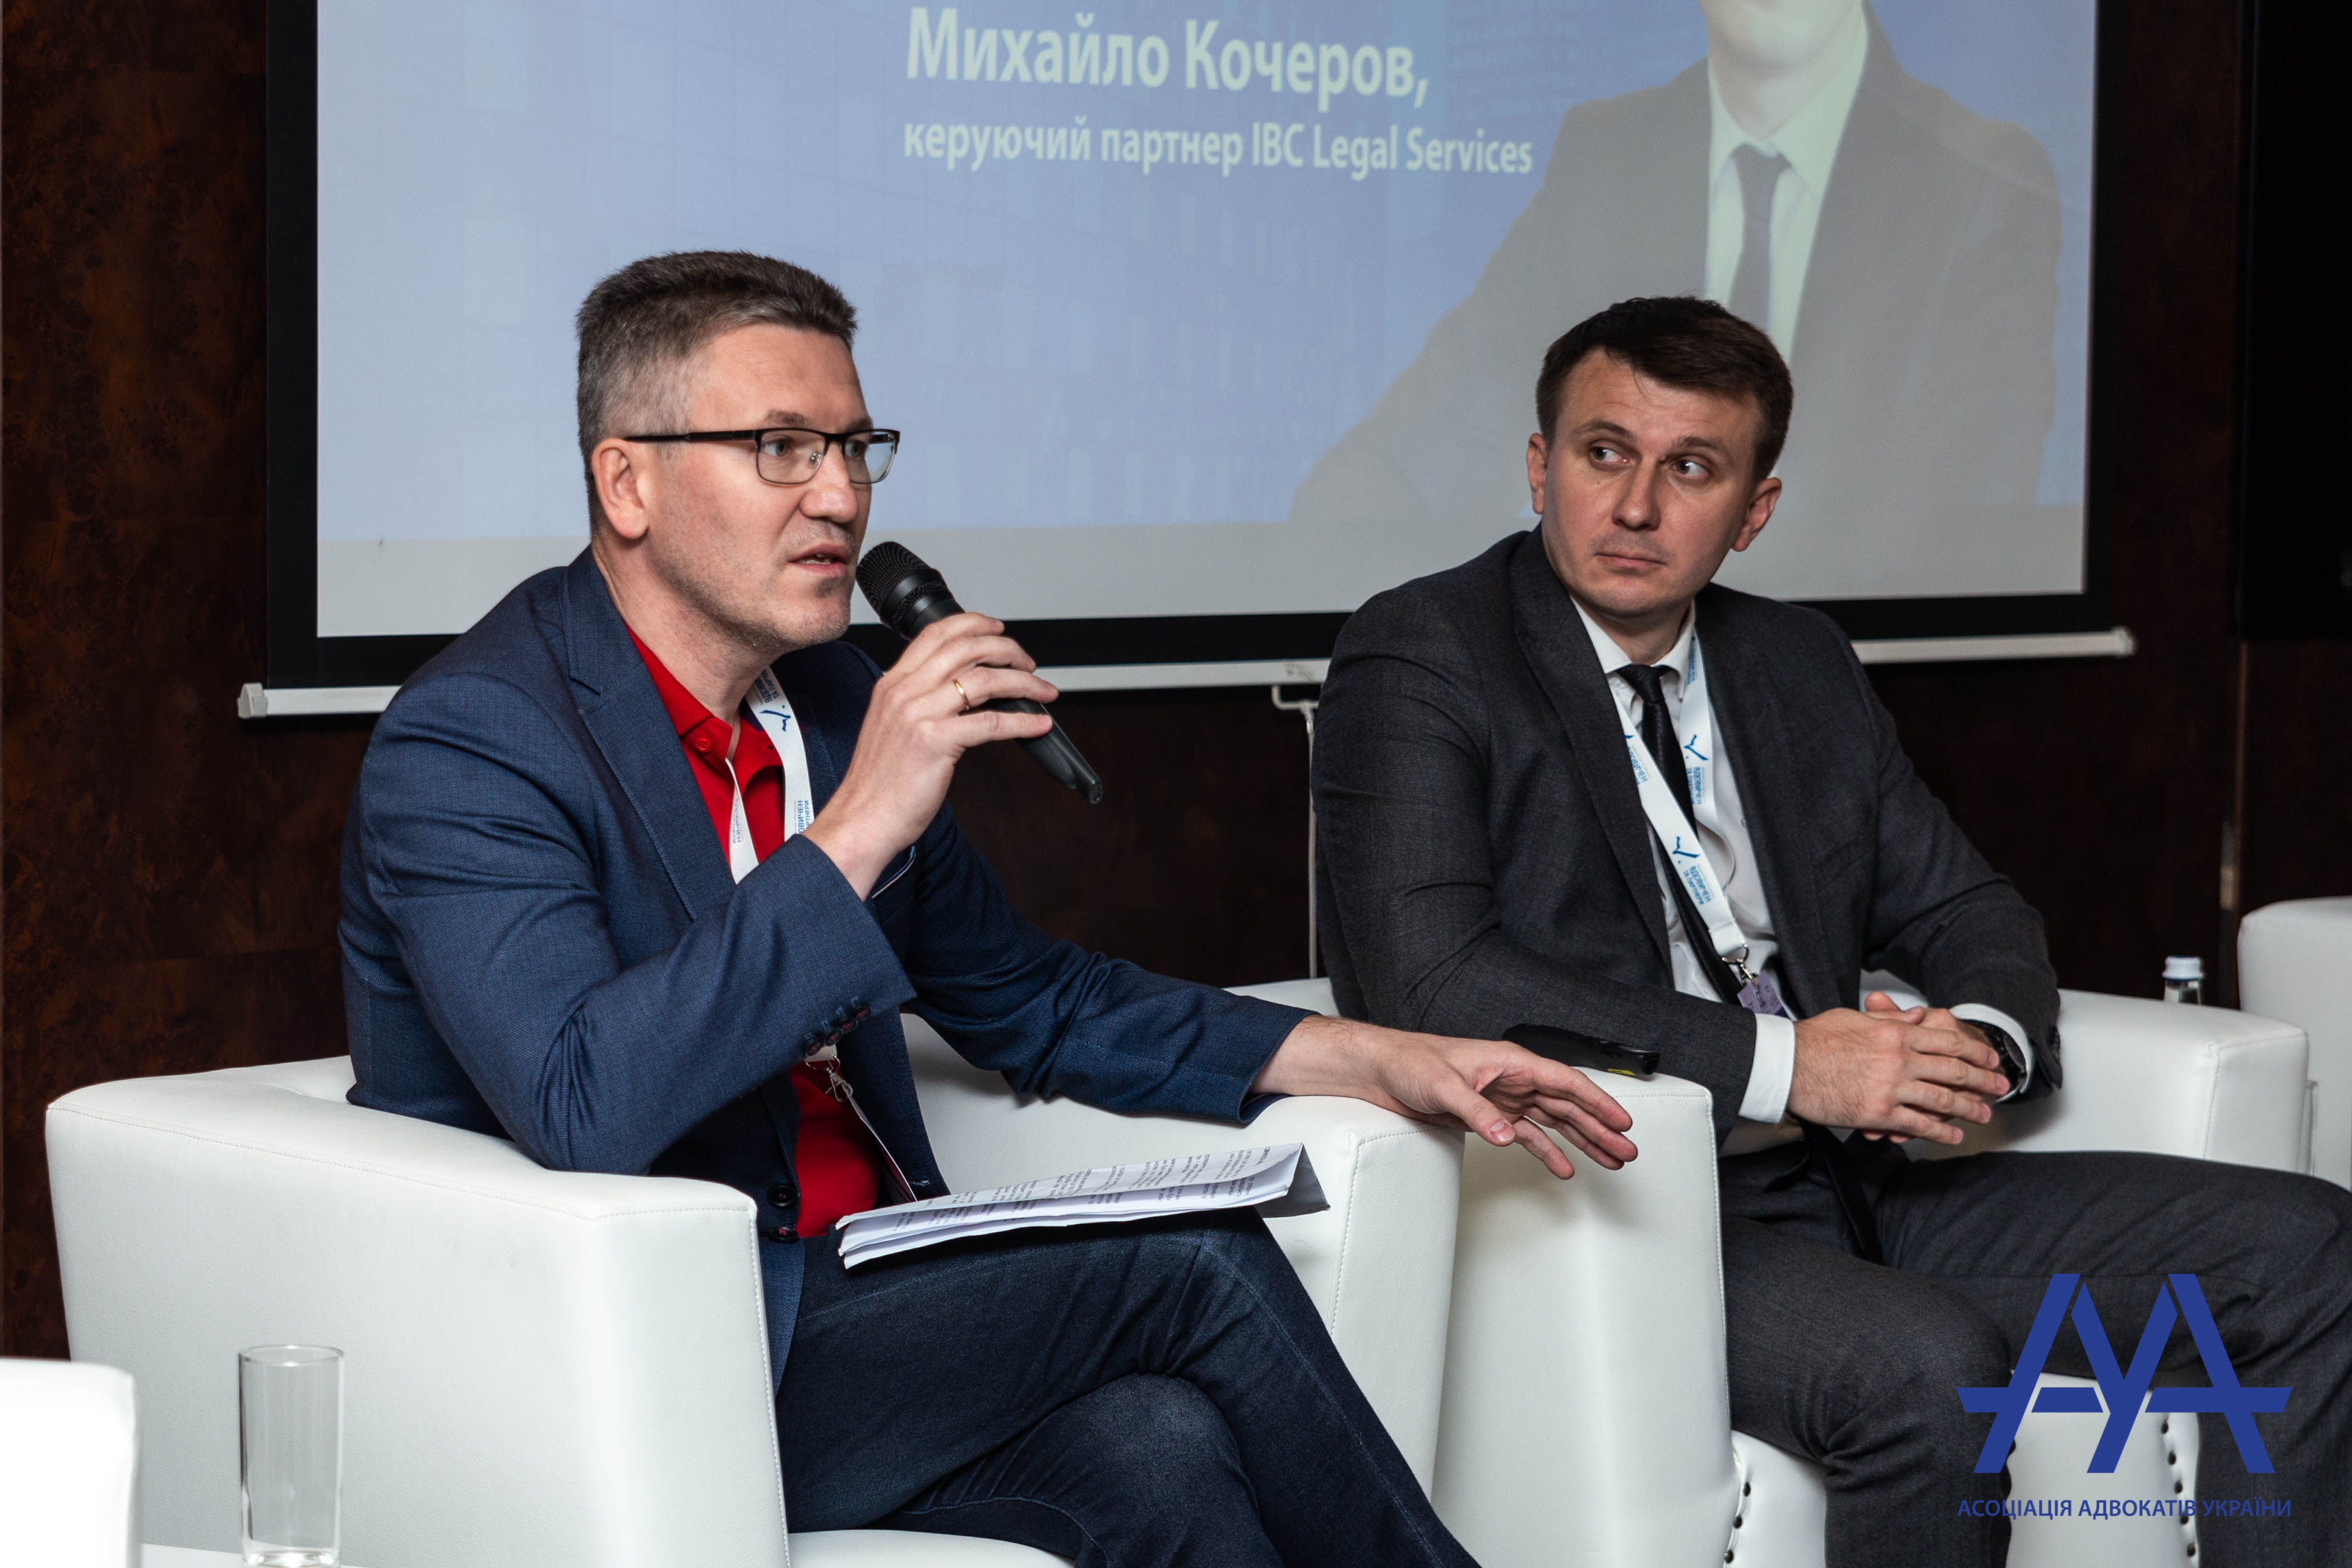 20 вересня 2019 року відбувся черговий масштабний захід Асоціації адвокатів України форум